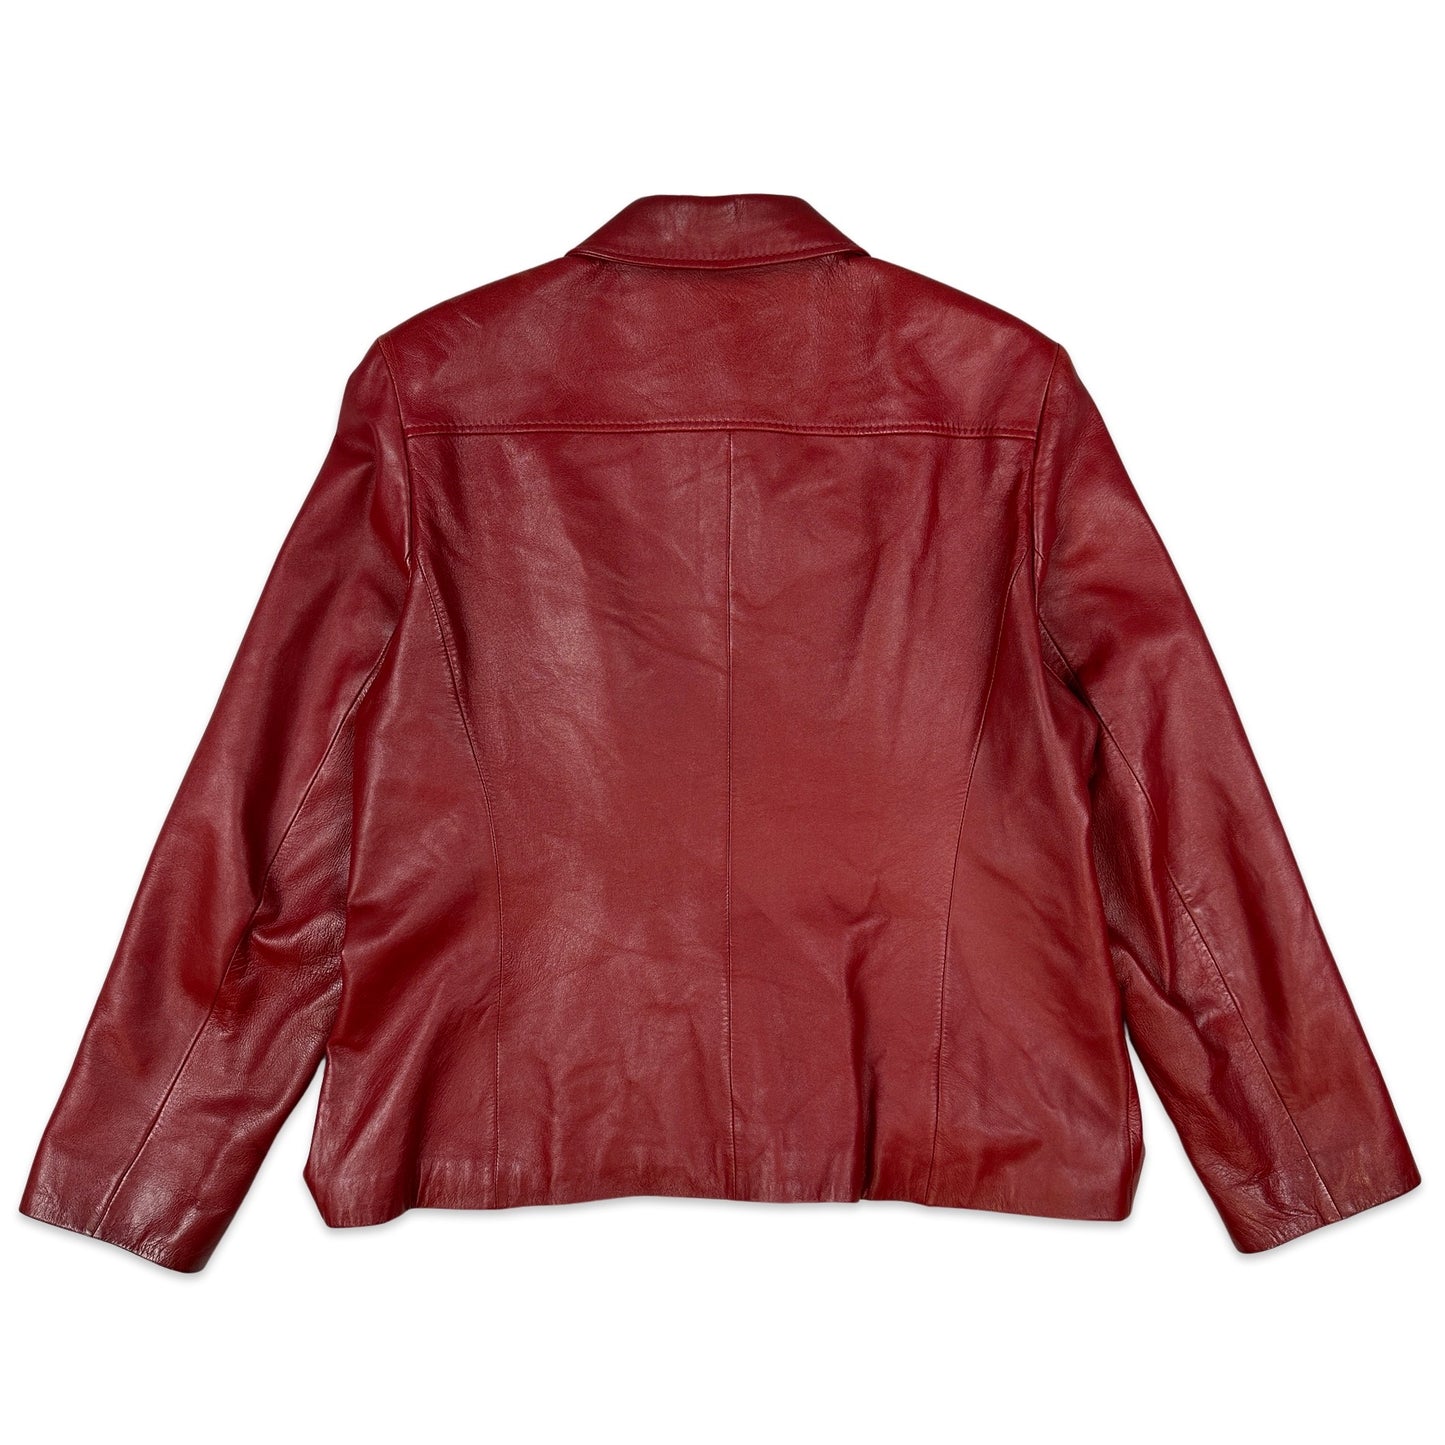 Y2K Vintage Gerry Weber Red Leather Jacket 14 16